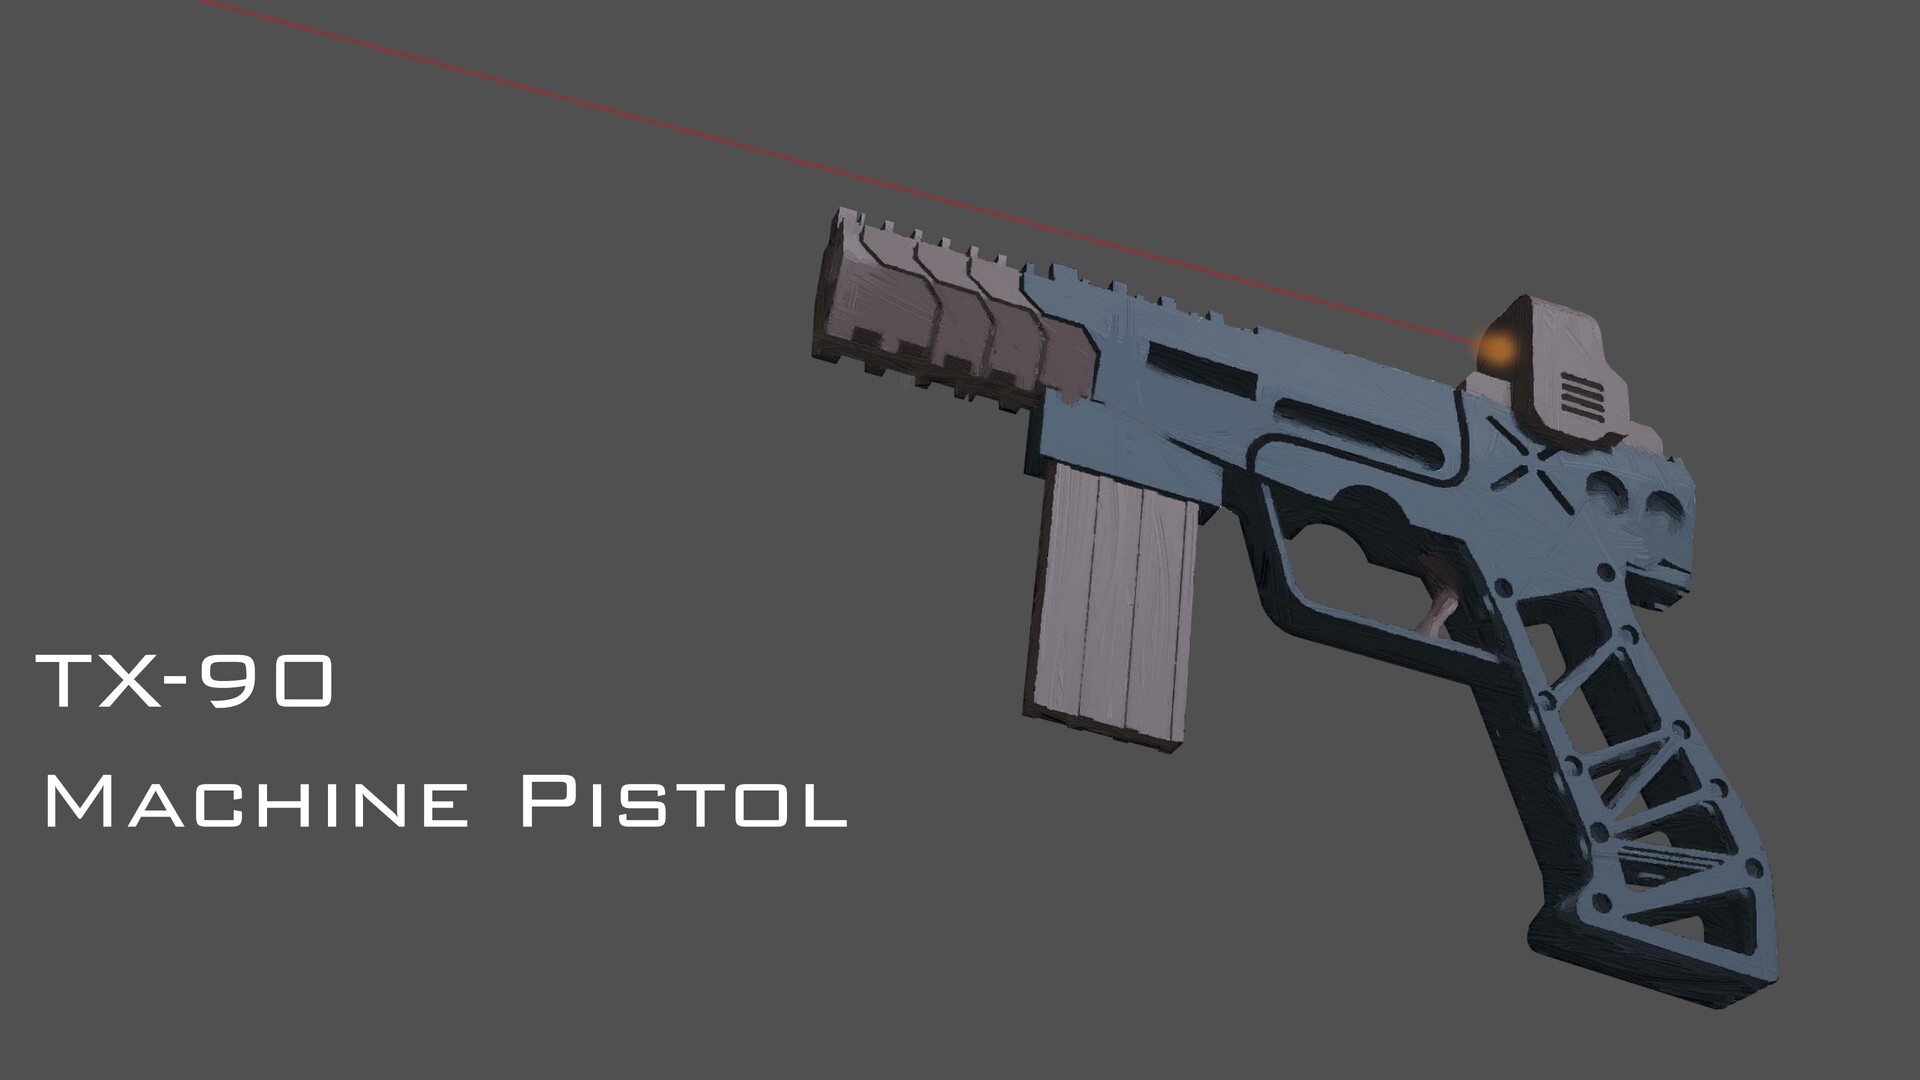 ArtStation - TX-90 machine pistol concept